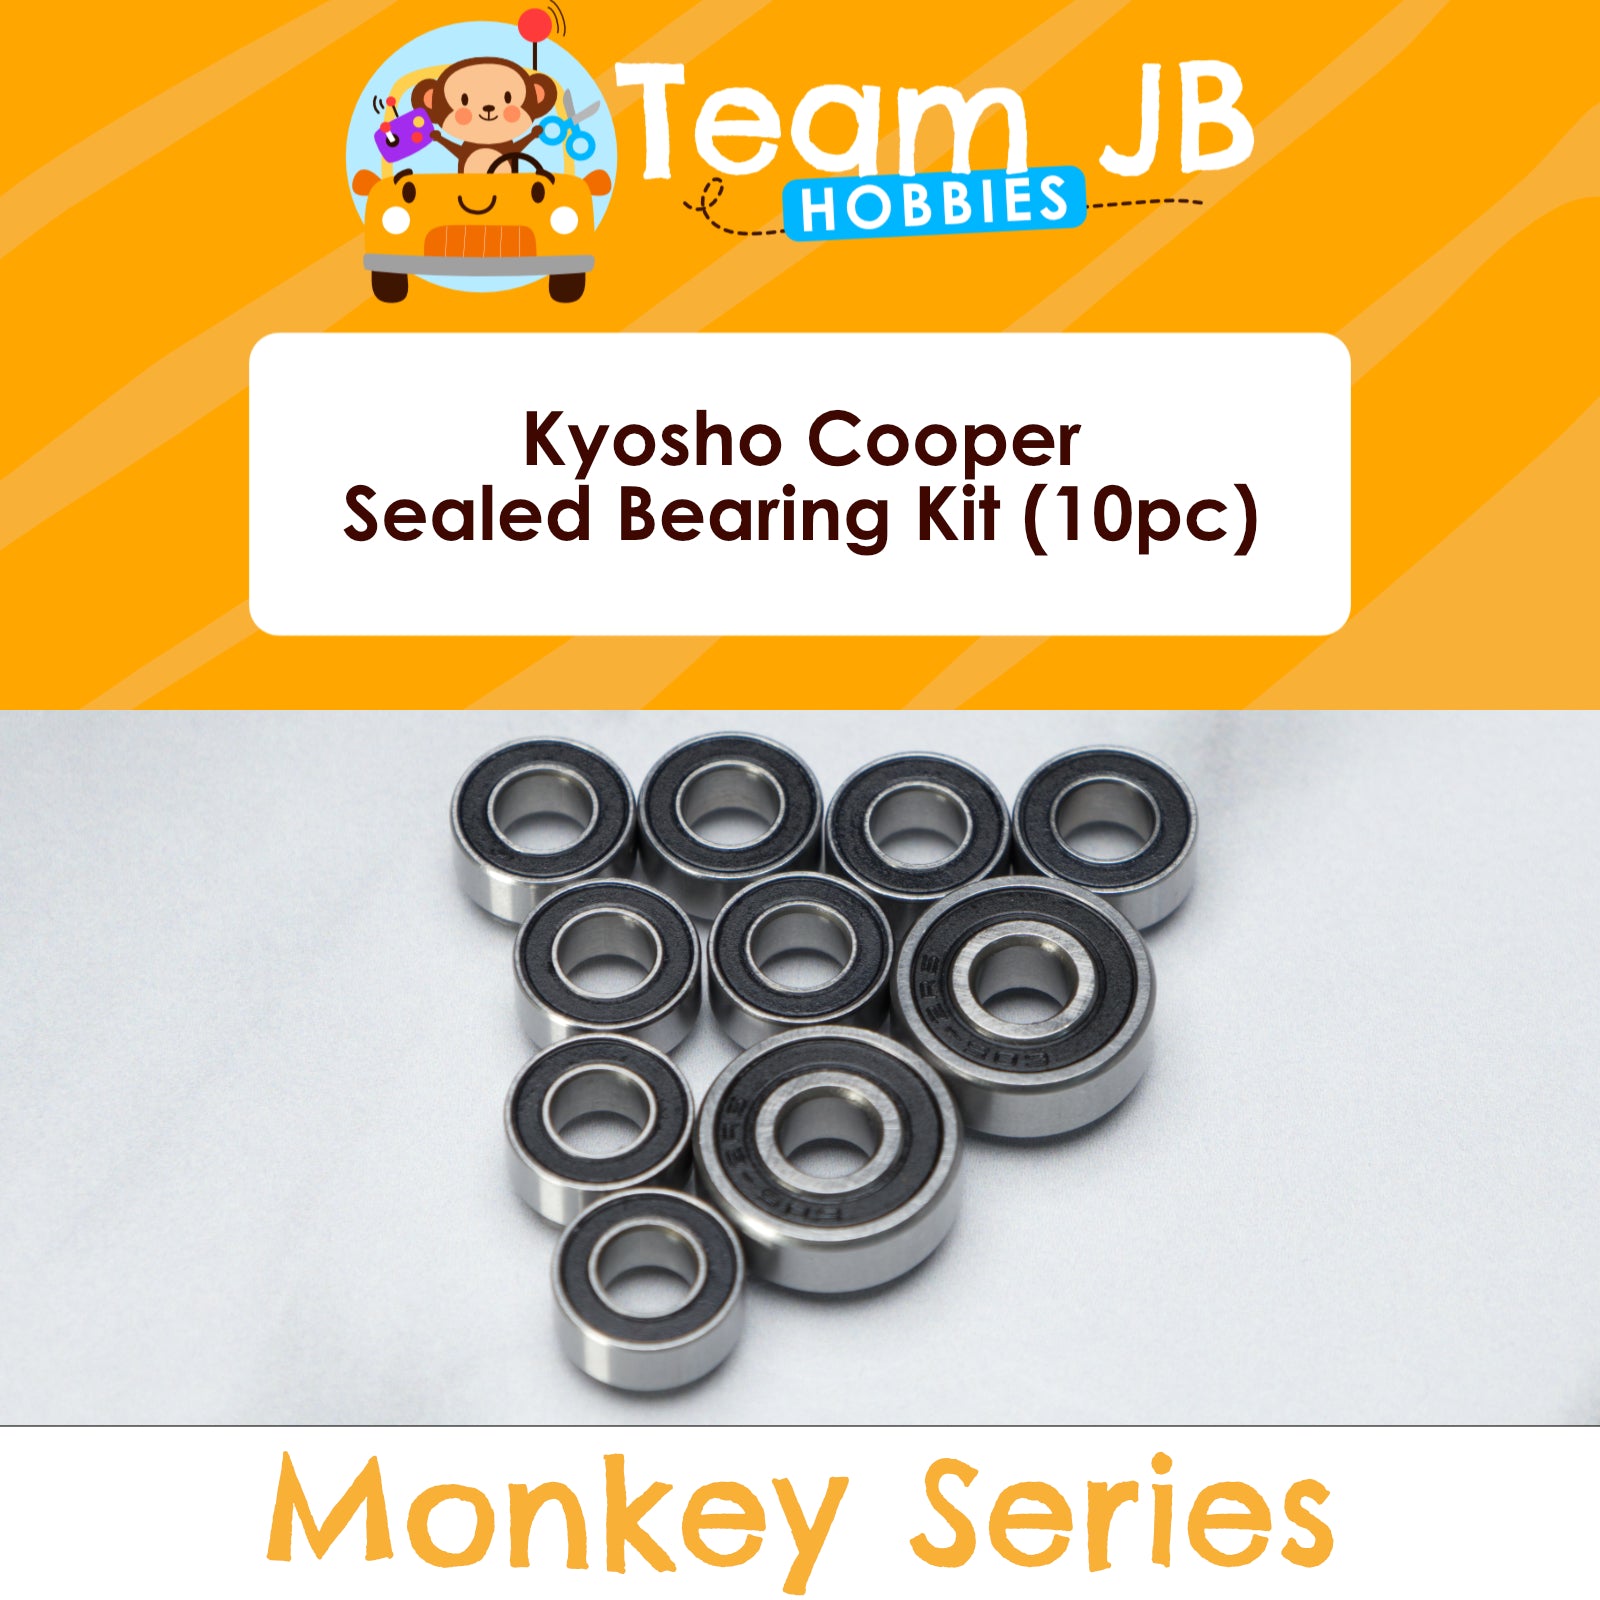 Kyosho Cooper - Sealed Bearing Kit